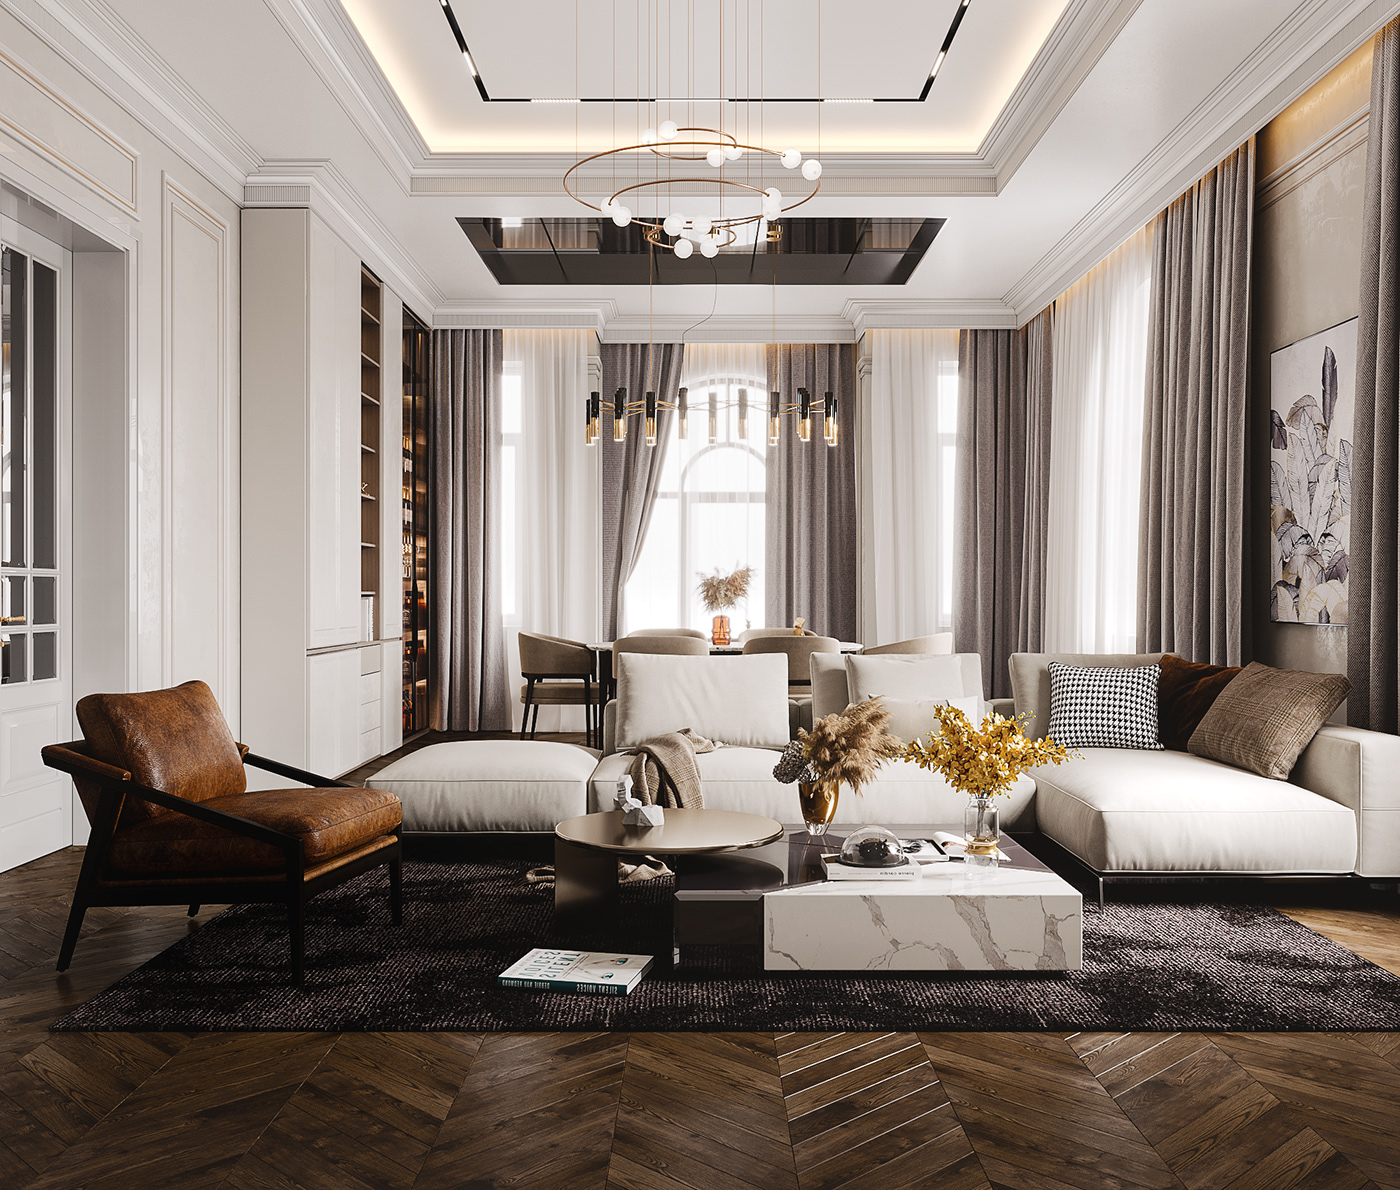 Design neoclassical Interior interior design  living room living room design neoclassic гостиная   гостинная дизайн